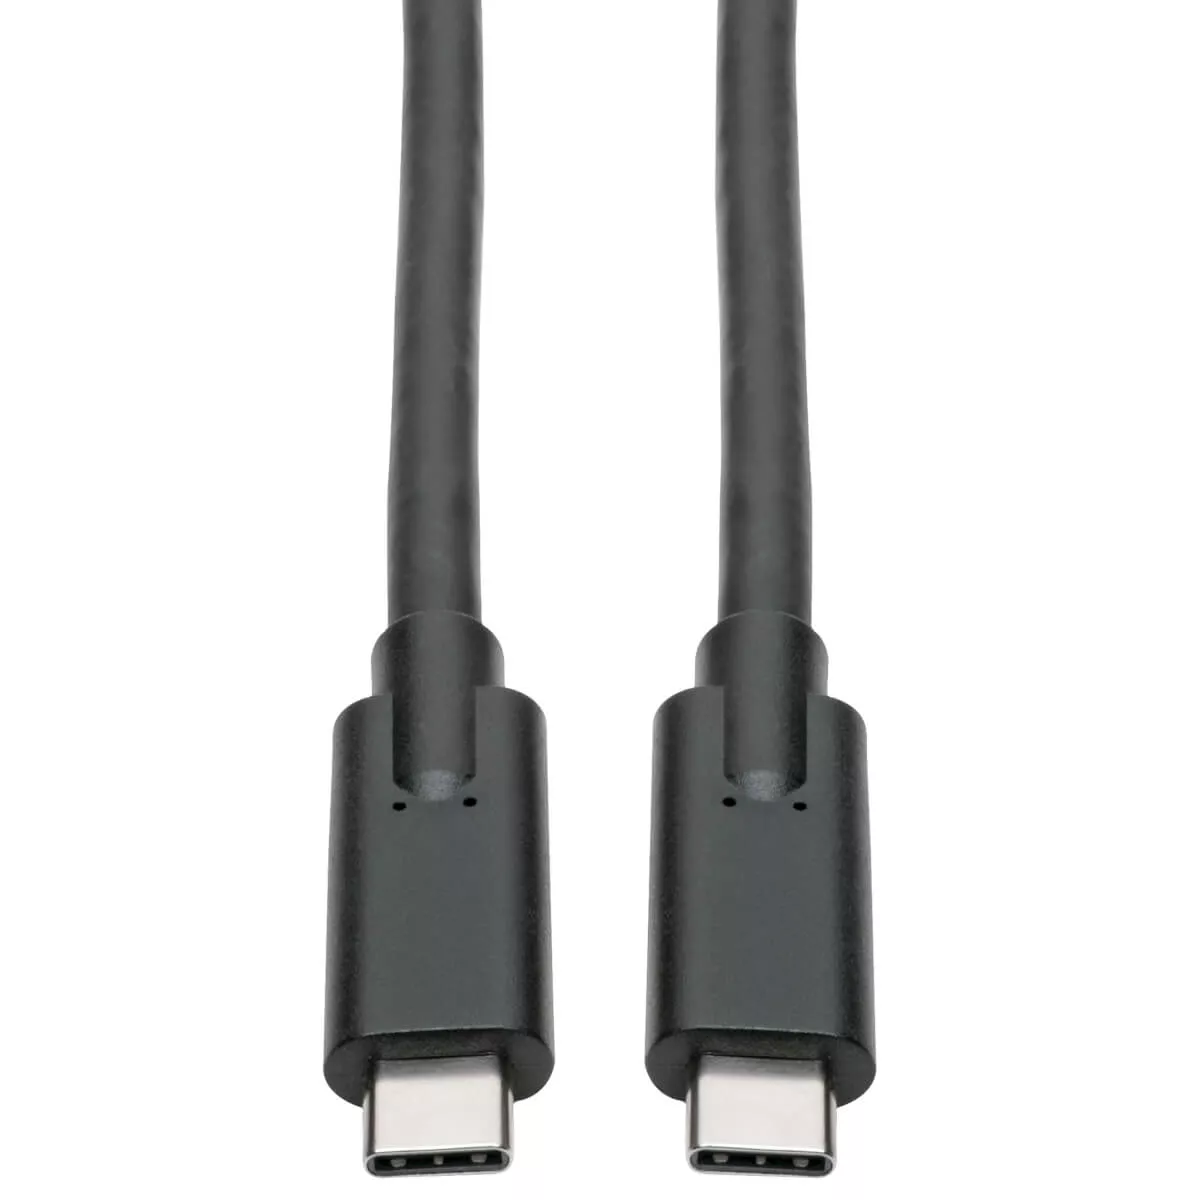 Vente Câble USB EATON TRIPPLITE USB-C Cable M/M - USB 3.1 Gen 1